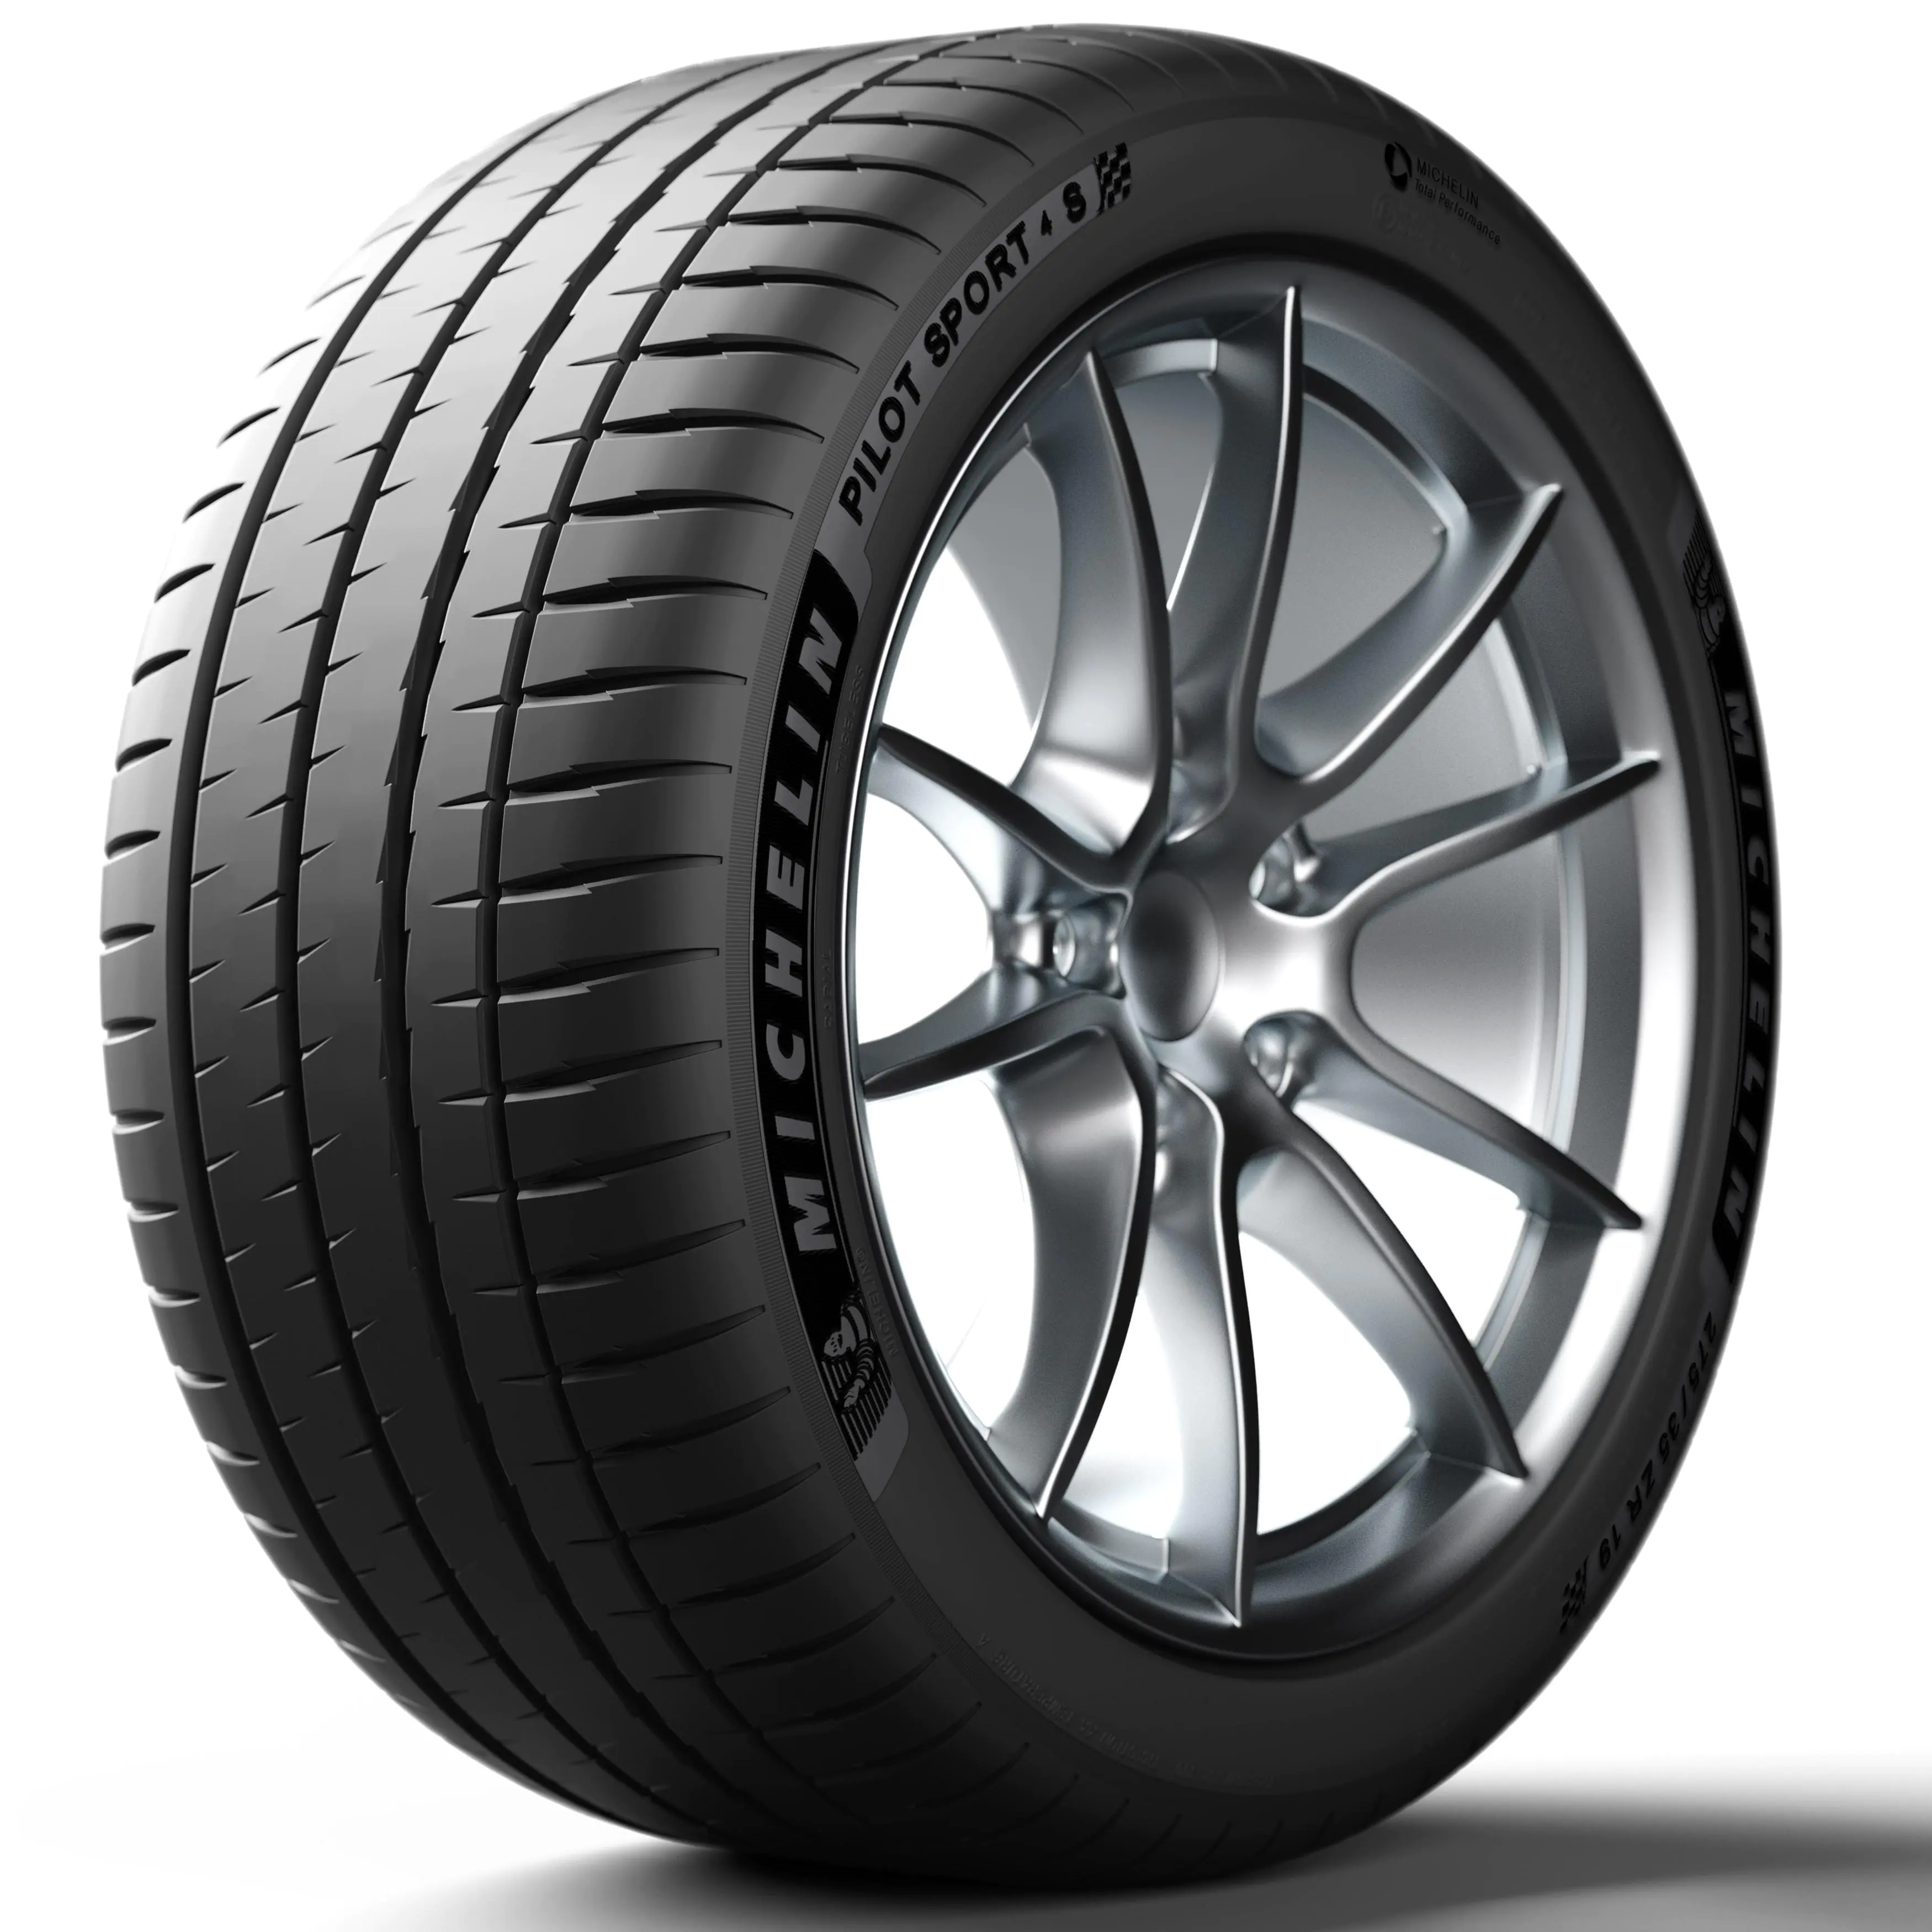 Michelin Michelin 325/30 R19 105Y P.SPORT 4 S XL pneumatici nuovi Estivo 